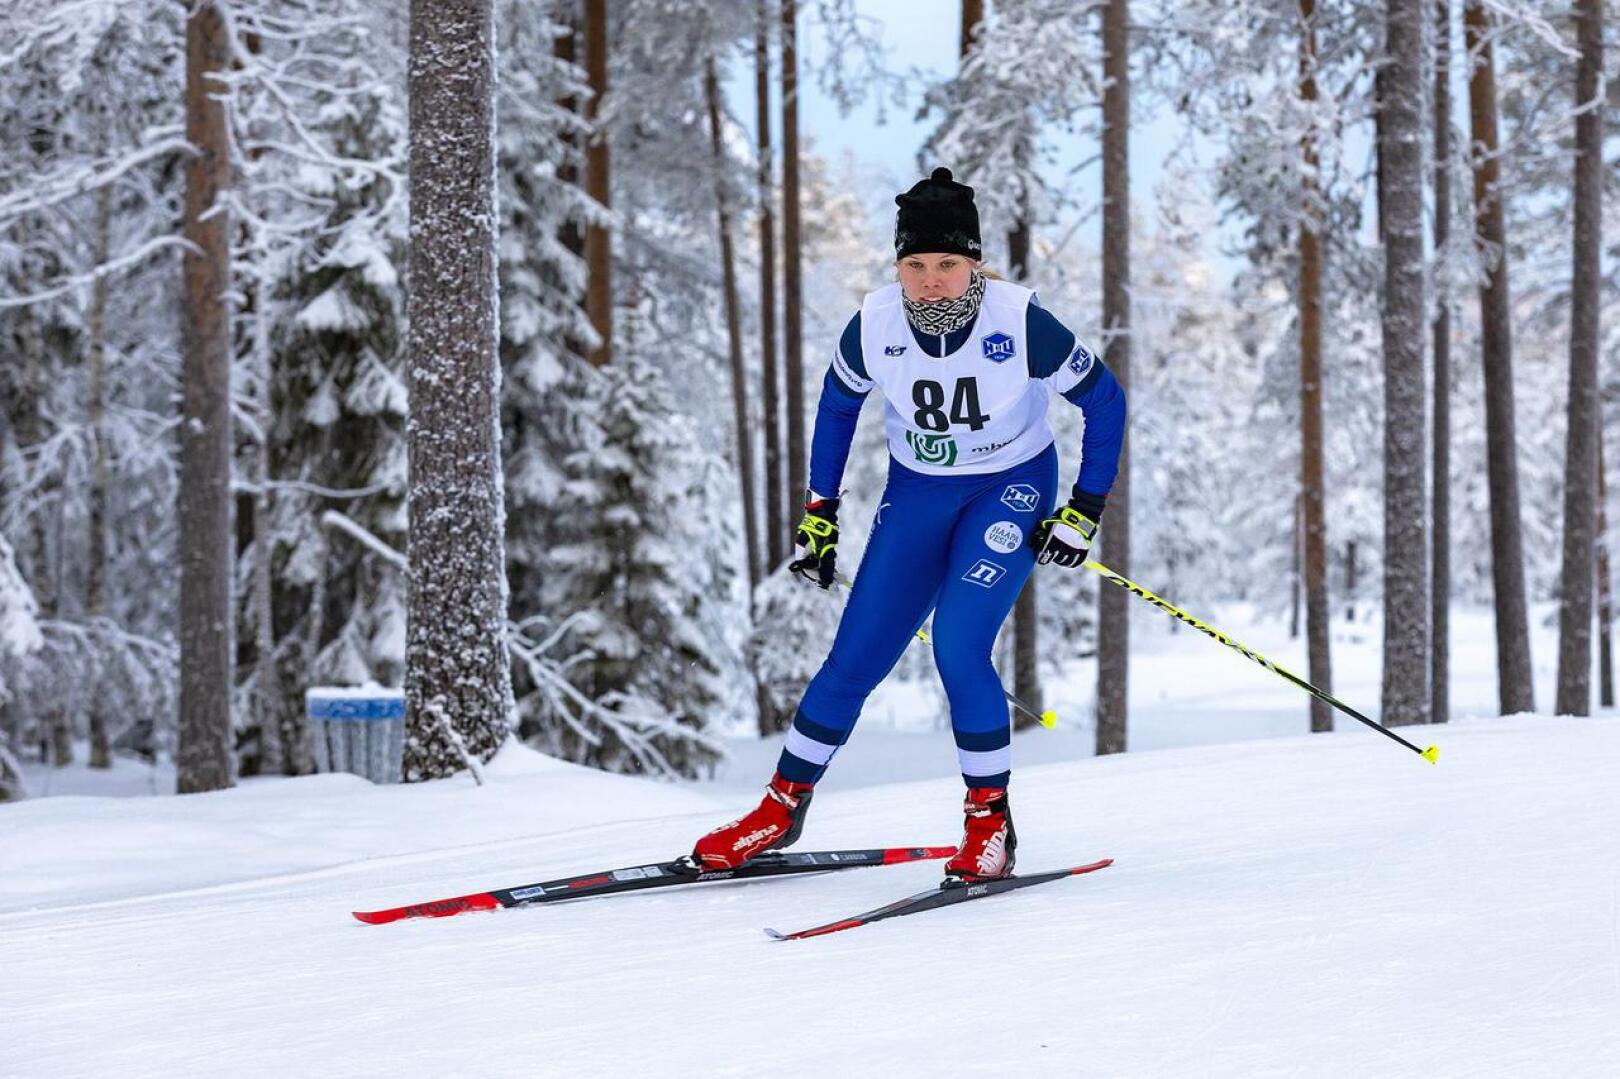 Viivi Jylänkiä jäi harmittamaan ensimmäisissä SM-hiihdoissa, ettei rohjennut lähteä heti startista rohkeammin liikkeelle. Arkistokuva.